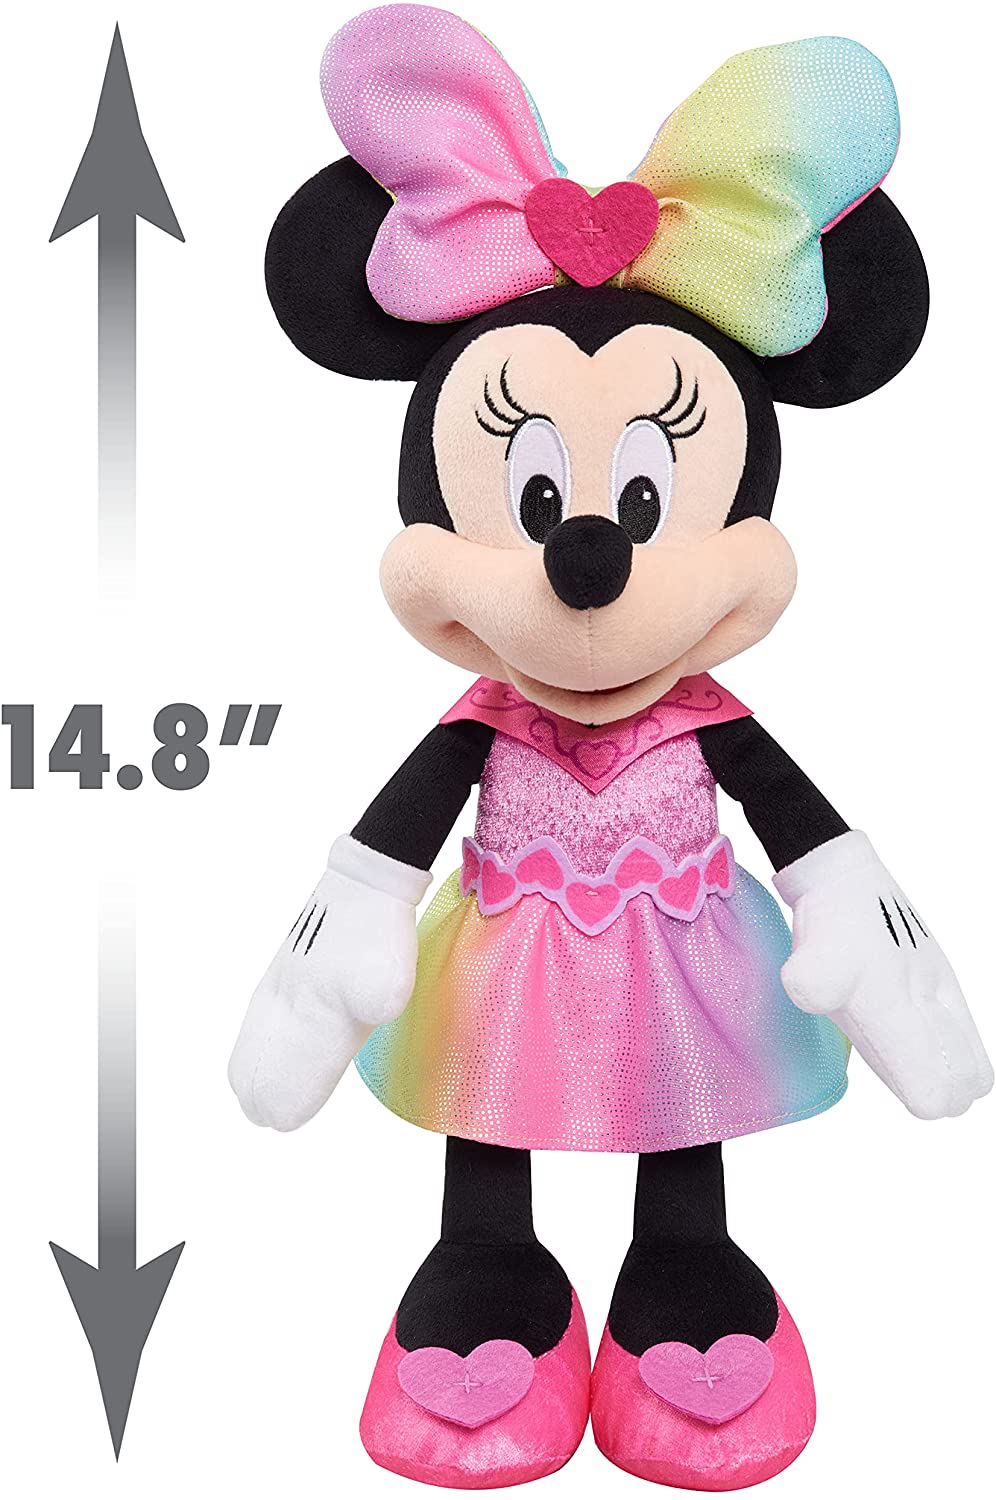 Minnie Mouse Peluche Interactiva 35 Cm Disney Luz Y Sonido